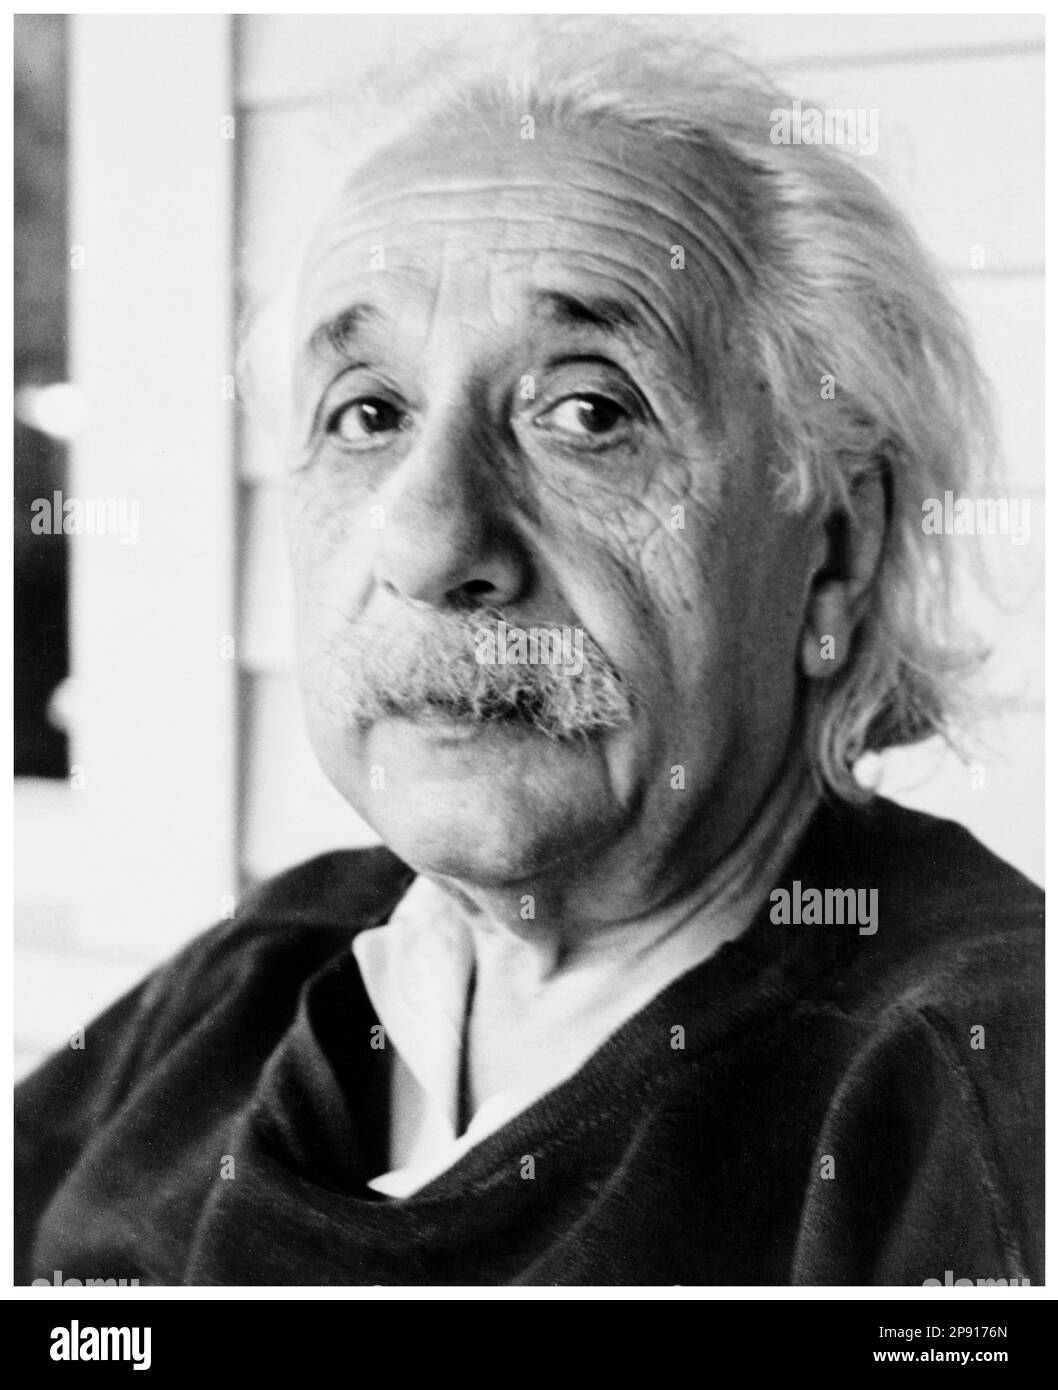 Albert Einstein (1879-1955), in Deutschland geborener theoretischer Physiker, Porträtfoto von John D. Schiff, ca. 1945 Stockfoto